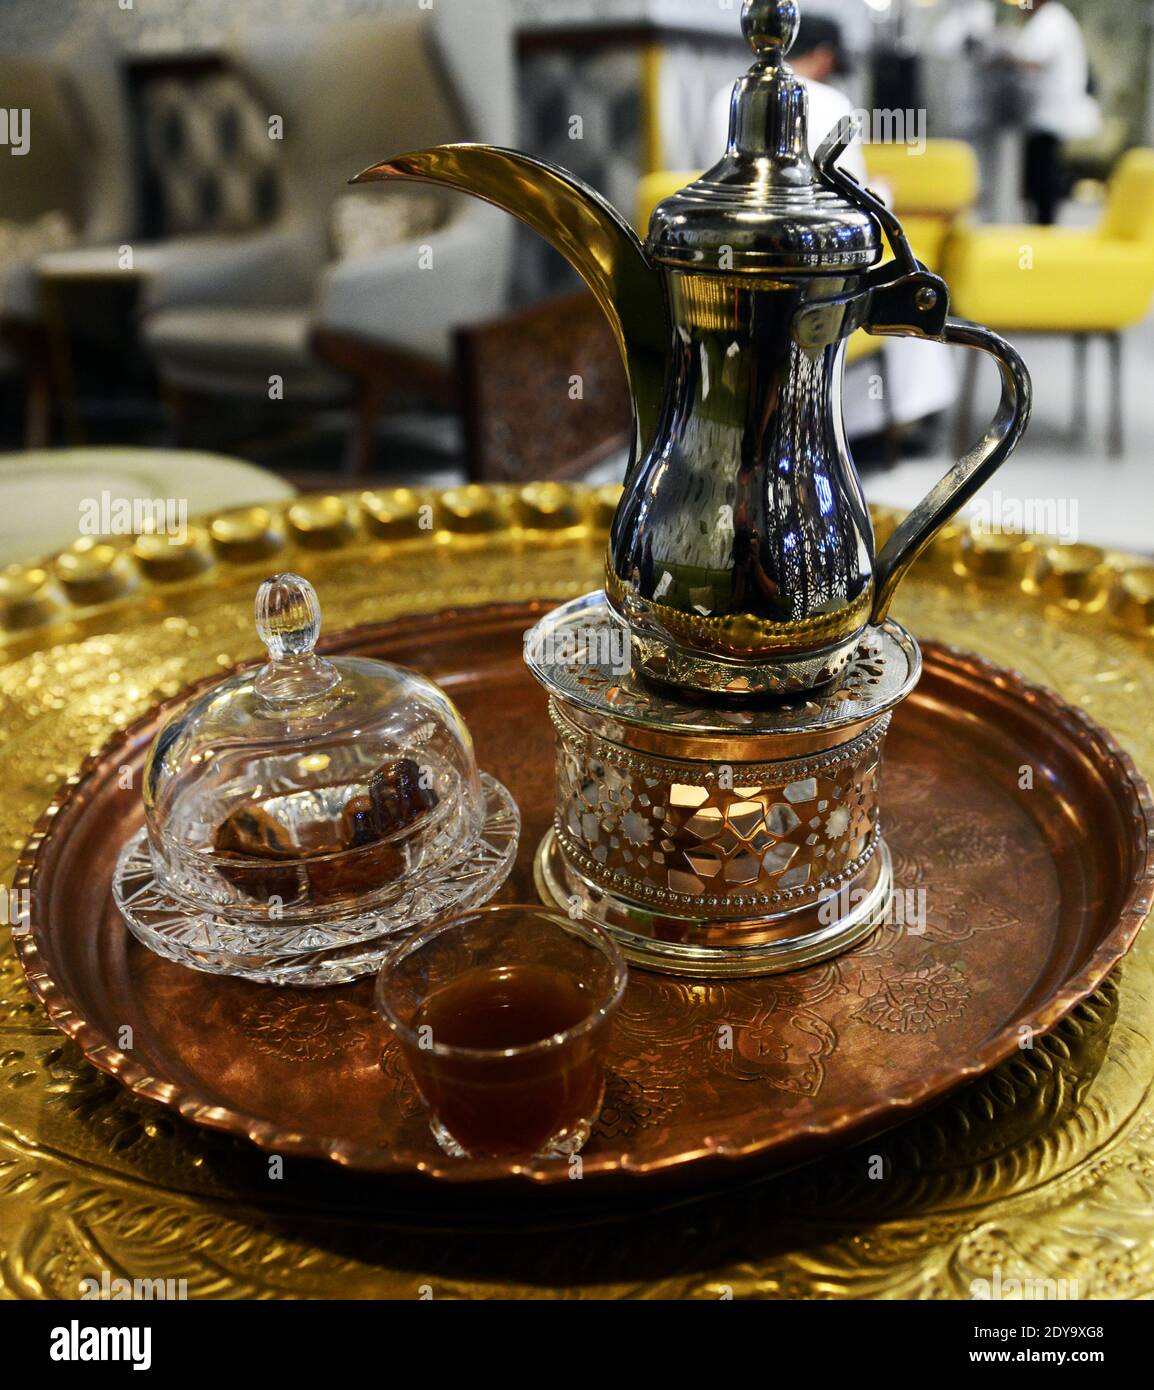 Café tradicional omaní servido en una olla tradicional. Foto de stock